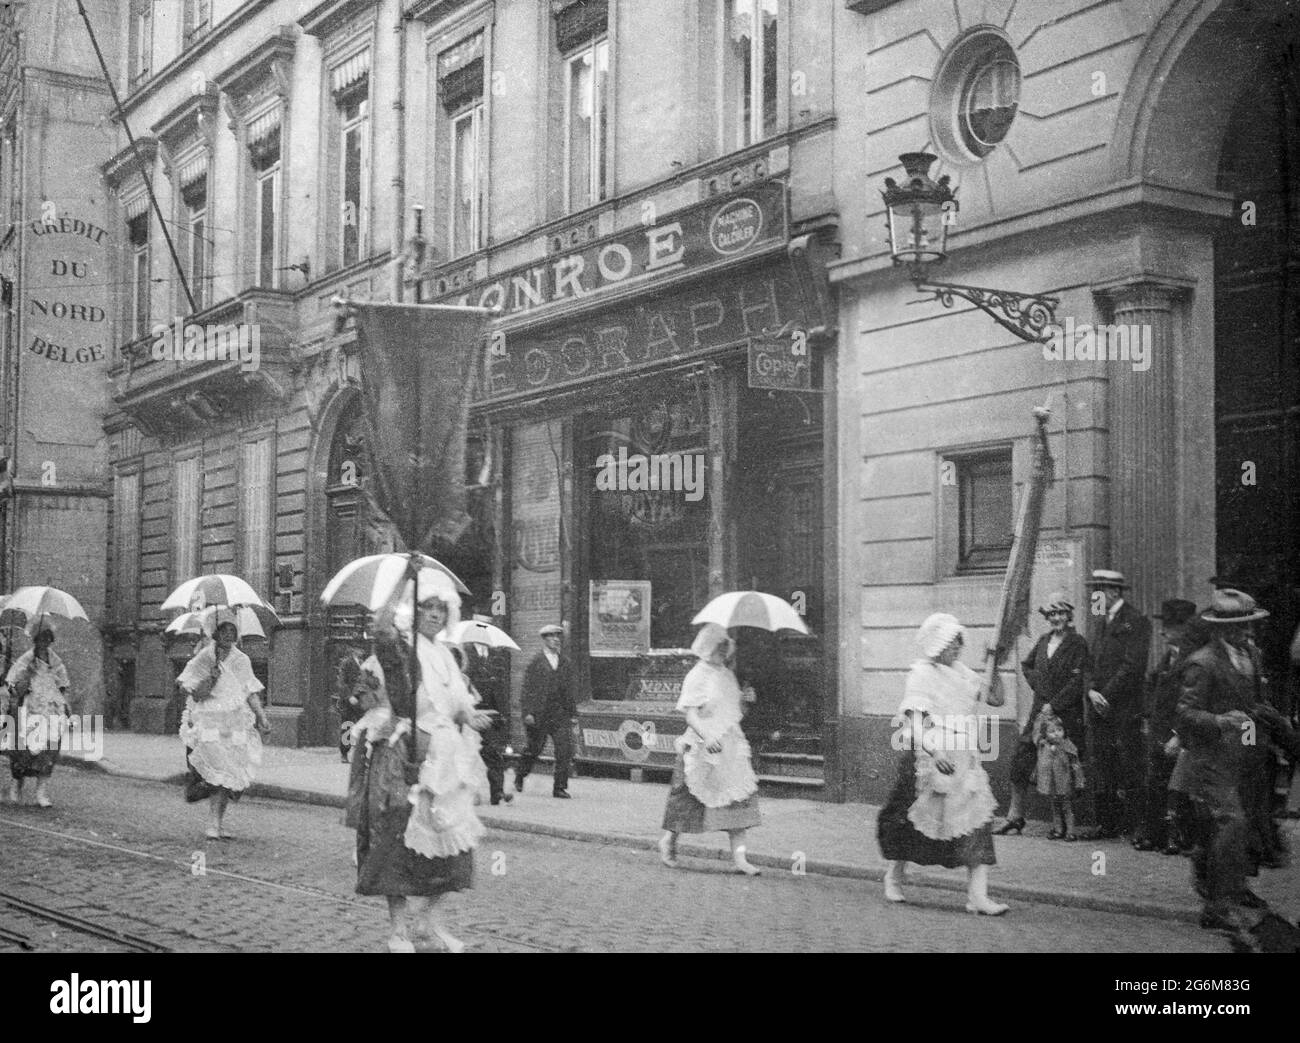 Une photographie ancienne en noir et blanc du début du XXe siècle prise à Bruxelles, en Belgique. L'image montre des femmes portant des parasols, marchant ou faisant une démonstration dans une rue. Banque D'Images